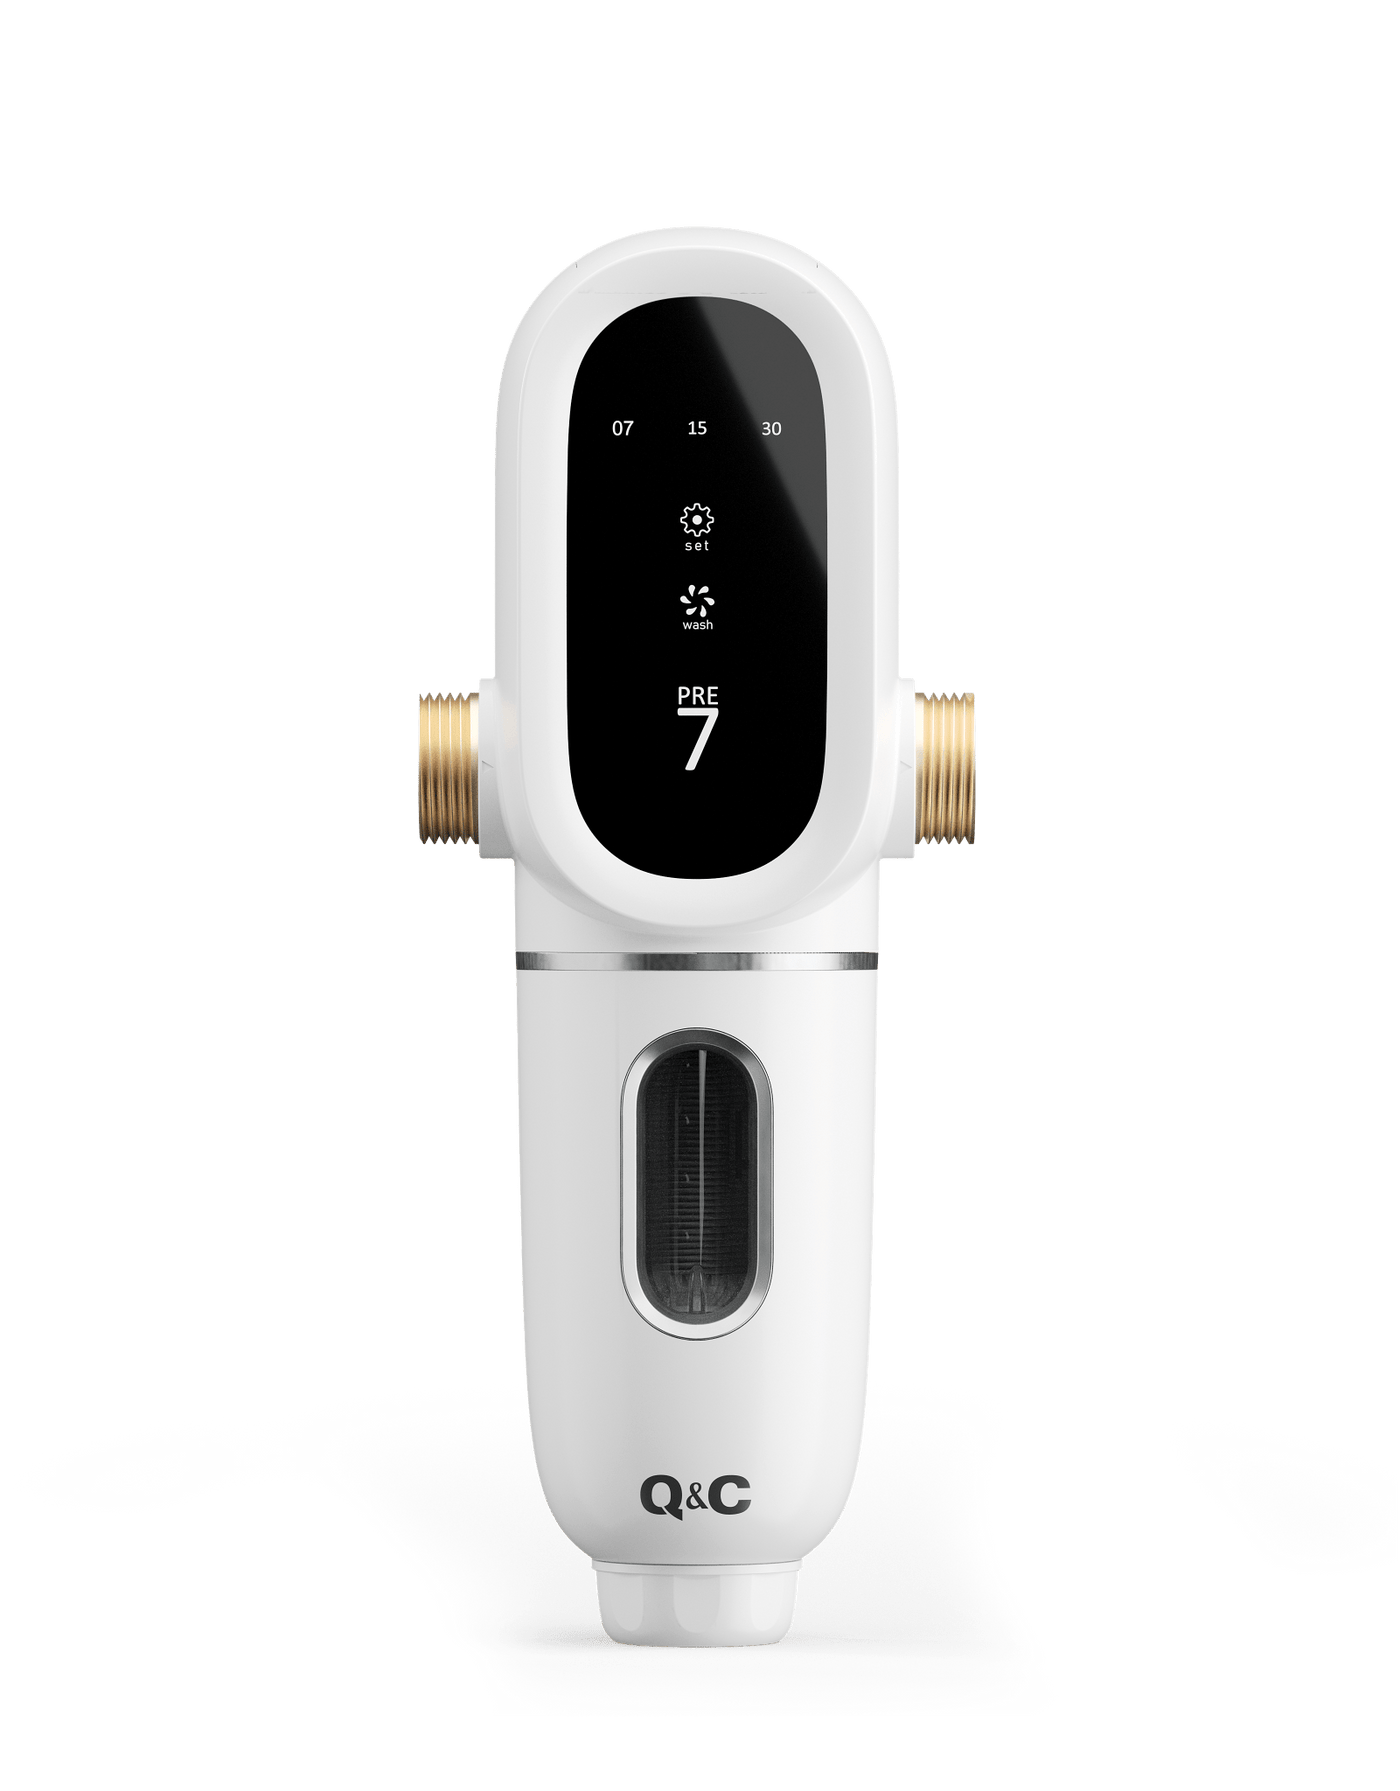 PRE7 - Automata öblítésű előszűrő - Q&C | Shop